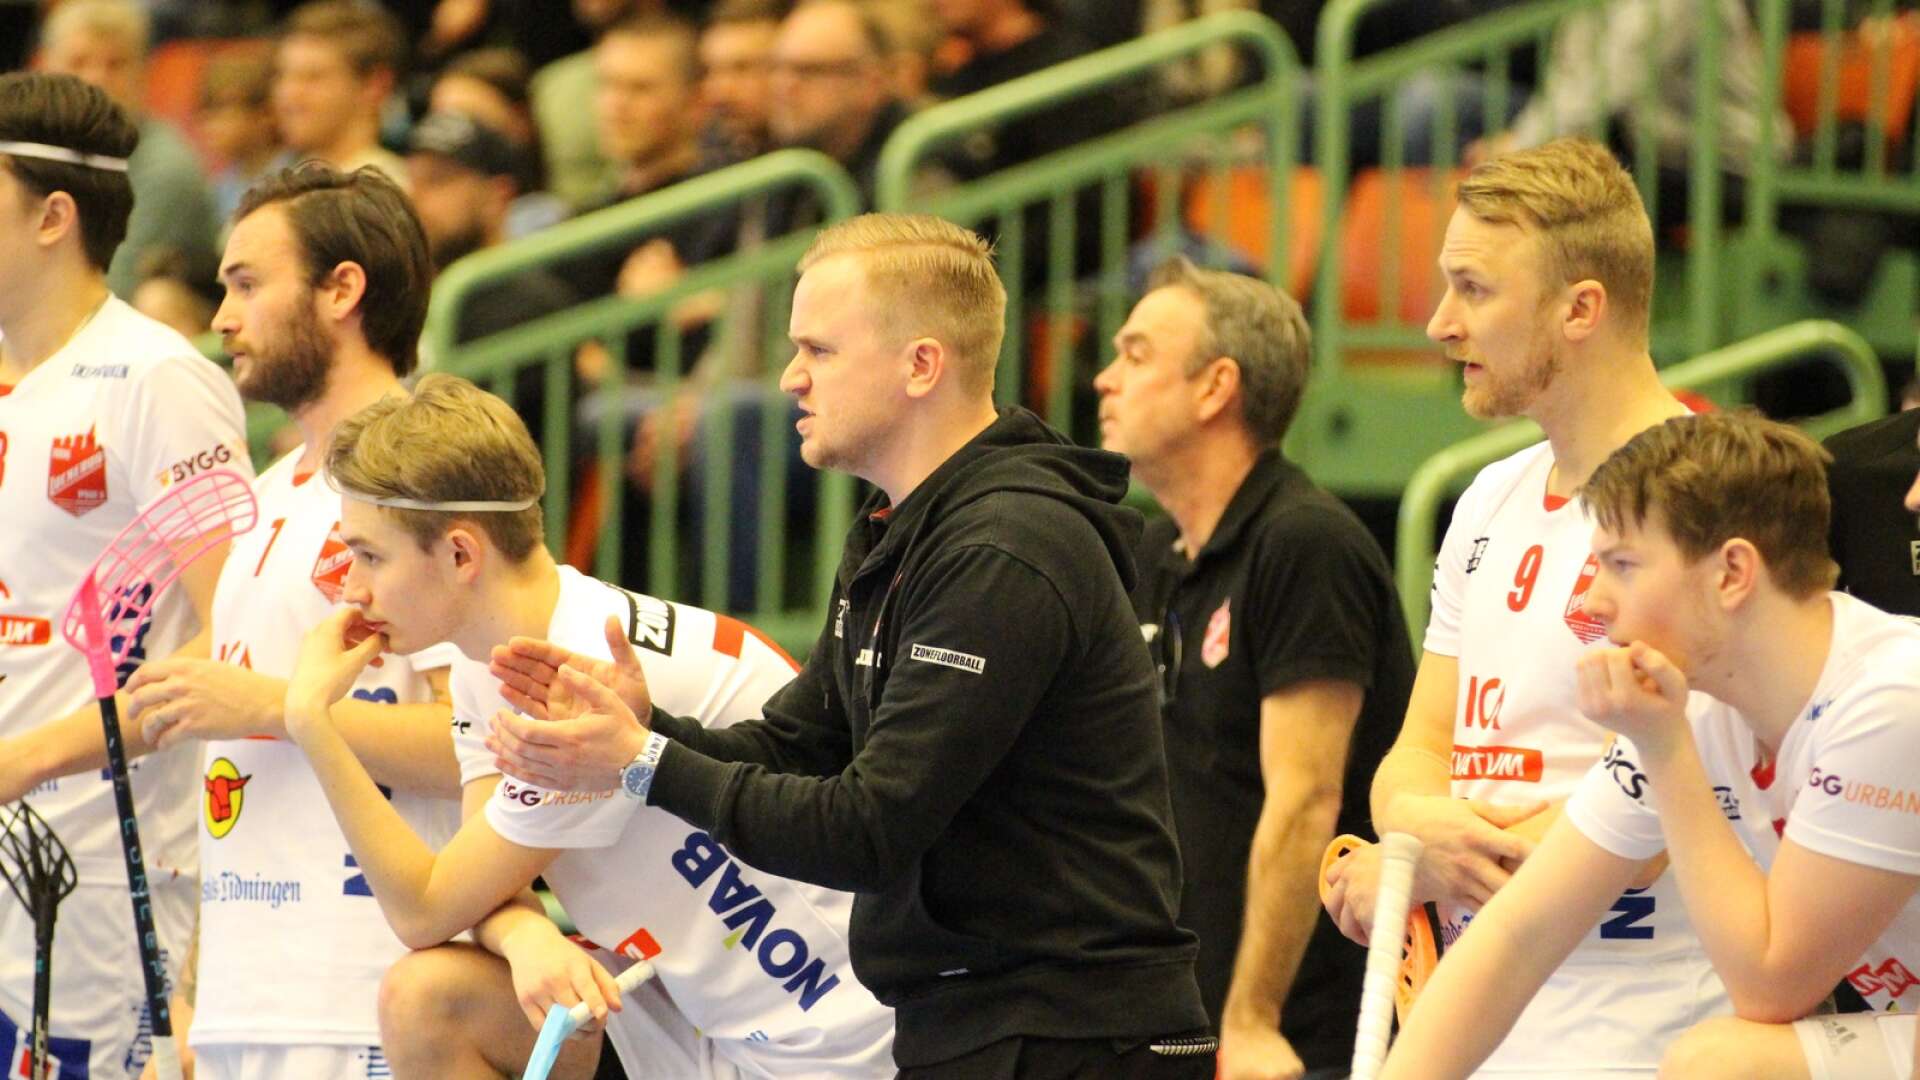 Lockeruds tränare Jesper Myrlund pushade på sina spelare, men det blev ett bistert slut på playoffspelet.